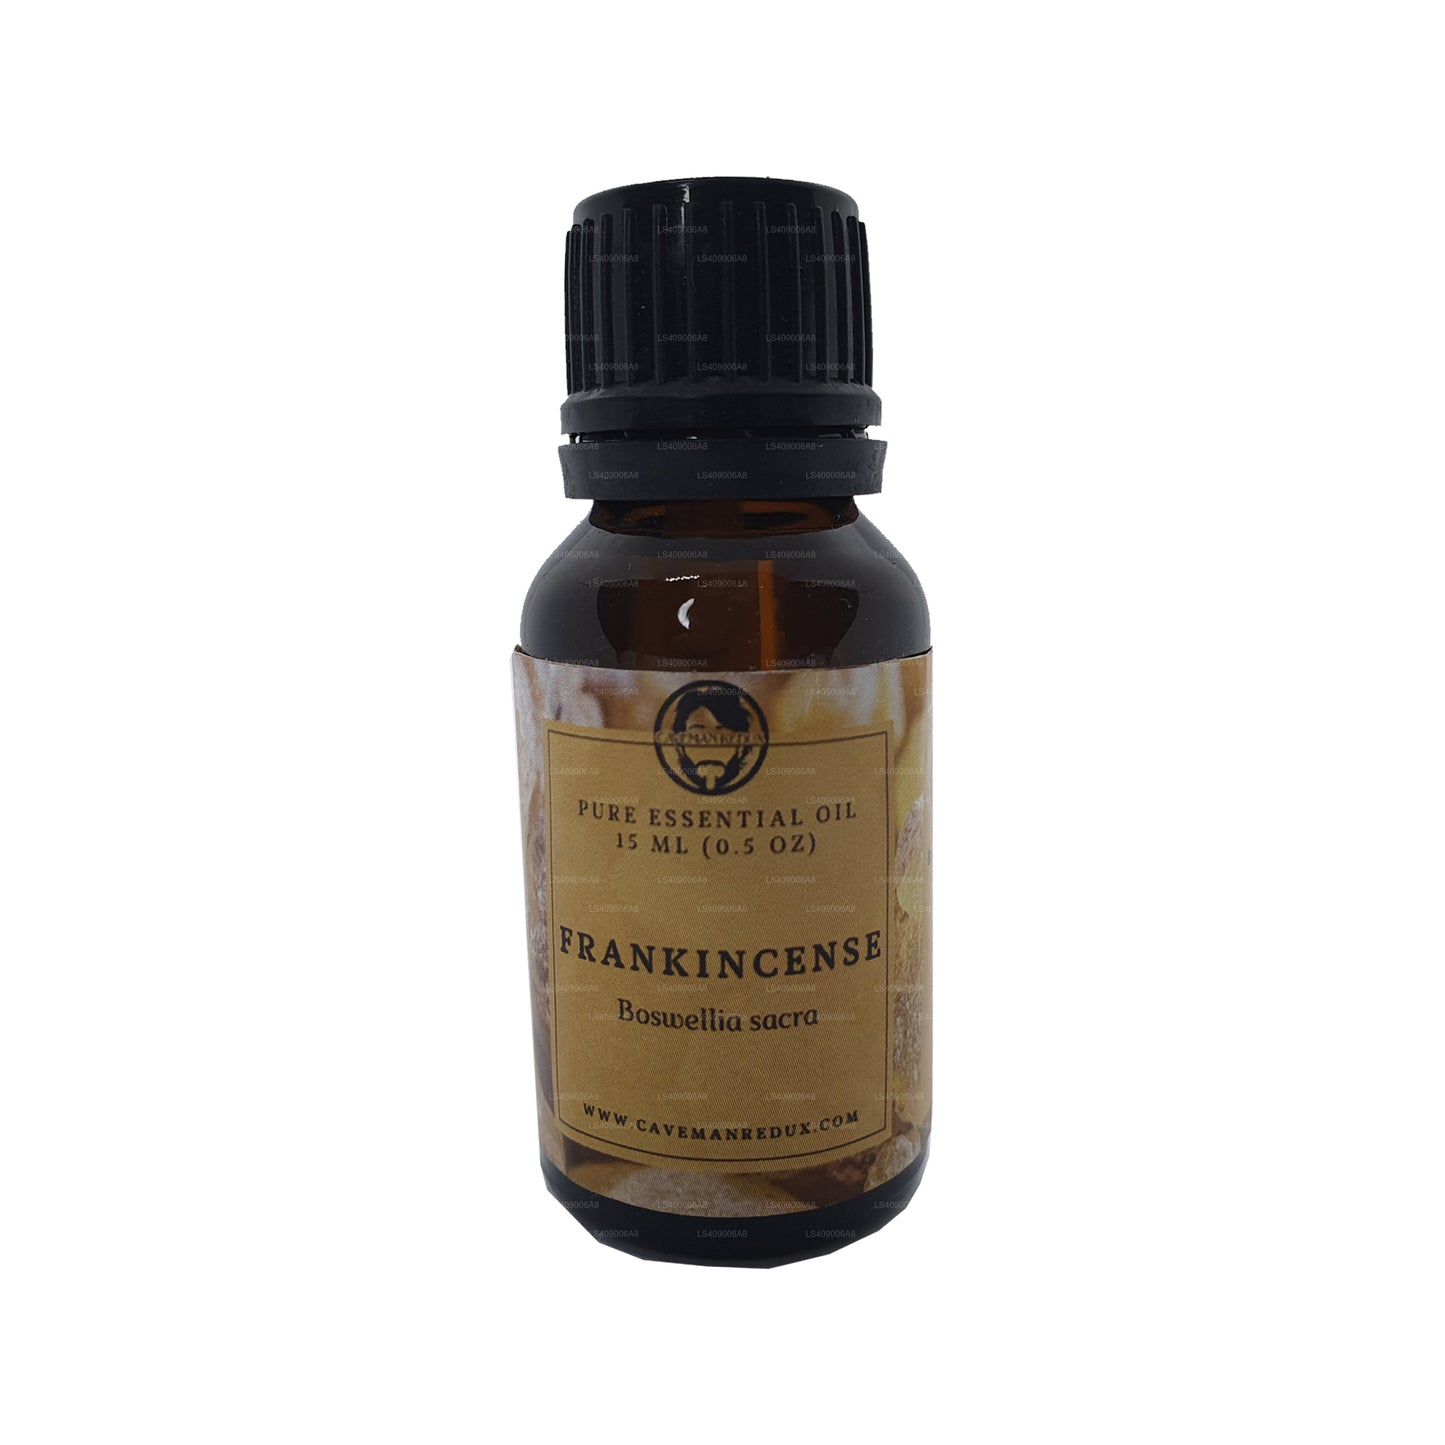 Olio essenziale di franchincenso Lakpura (15ml)